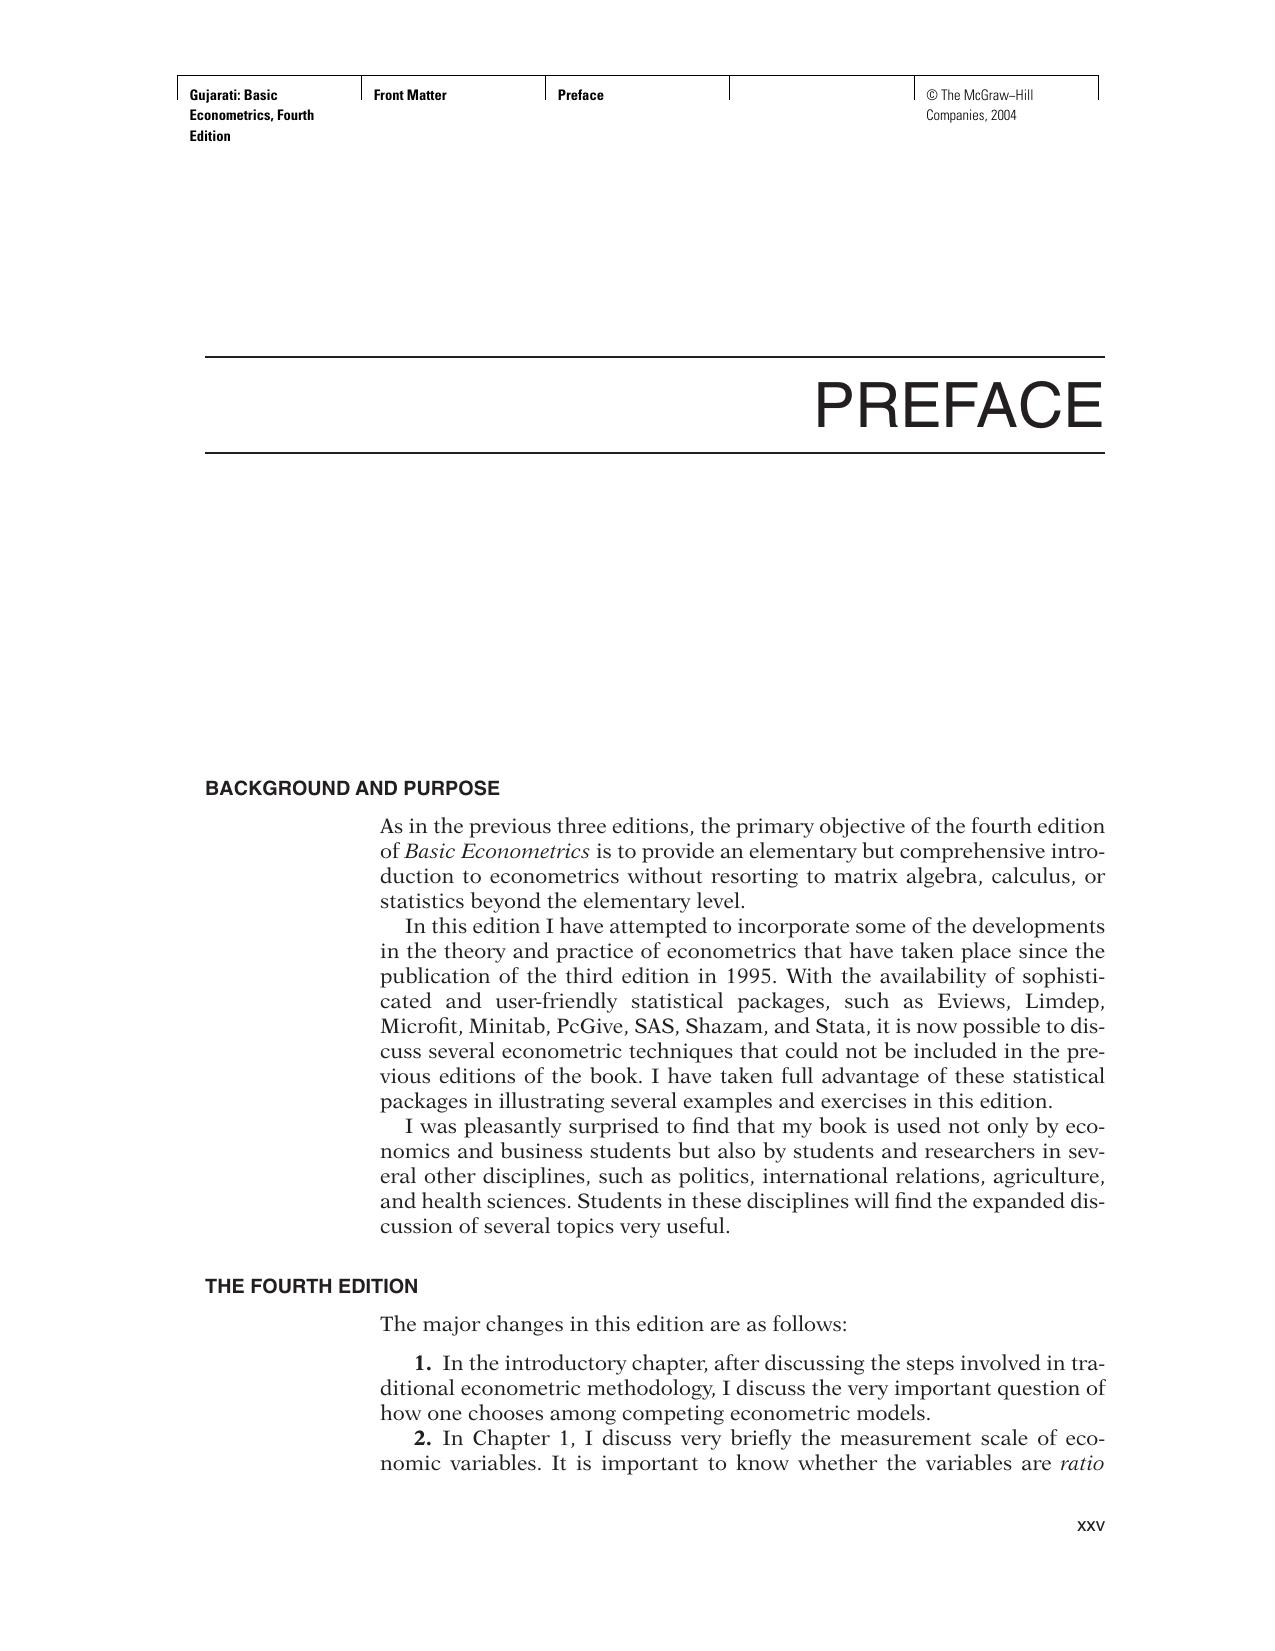 Basic econometrics.  Student solutions manual for use with Basic econometrics 2007